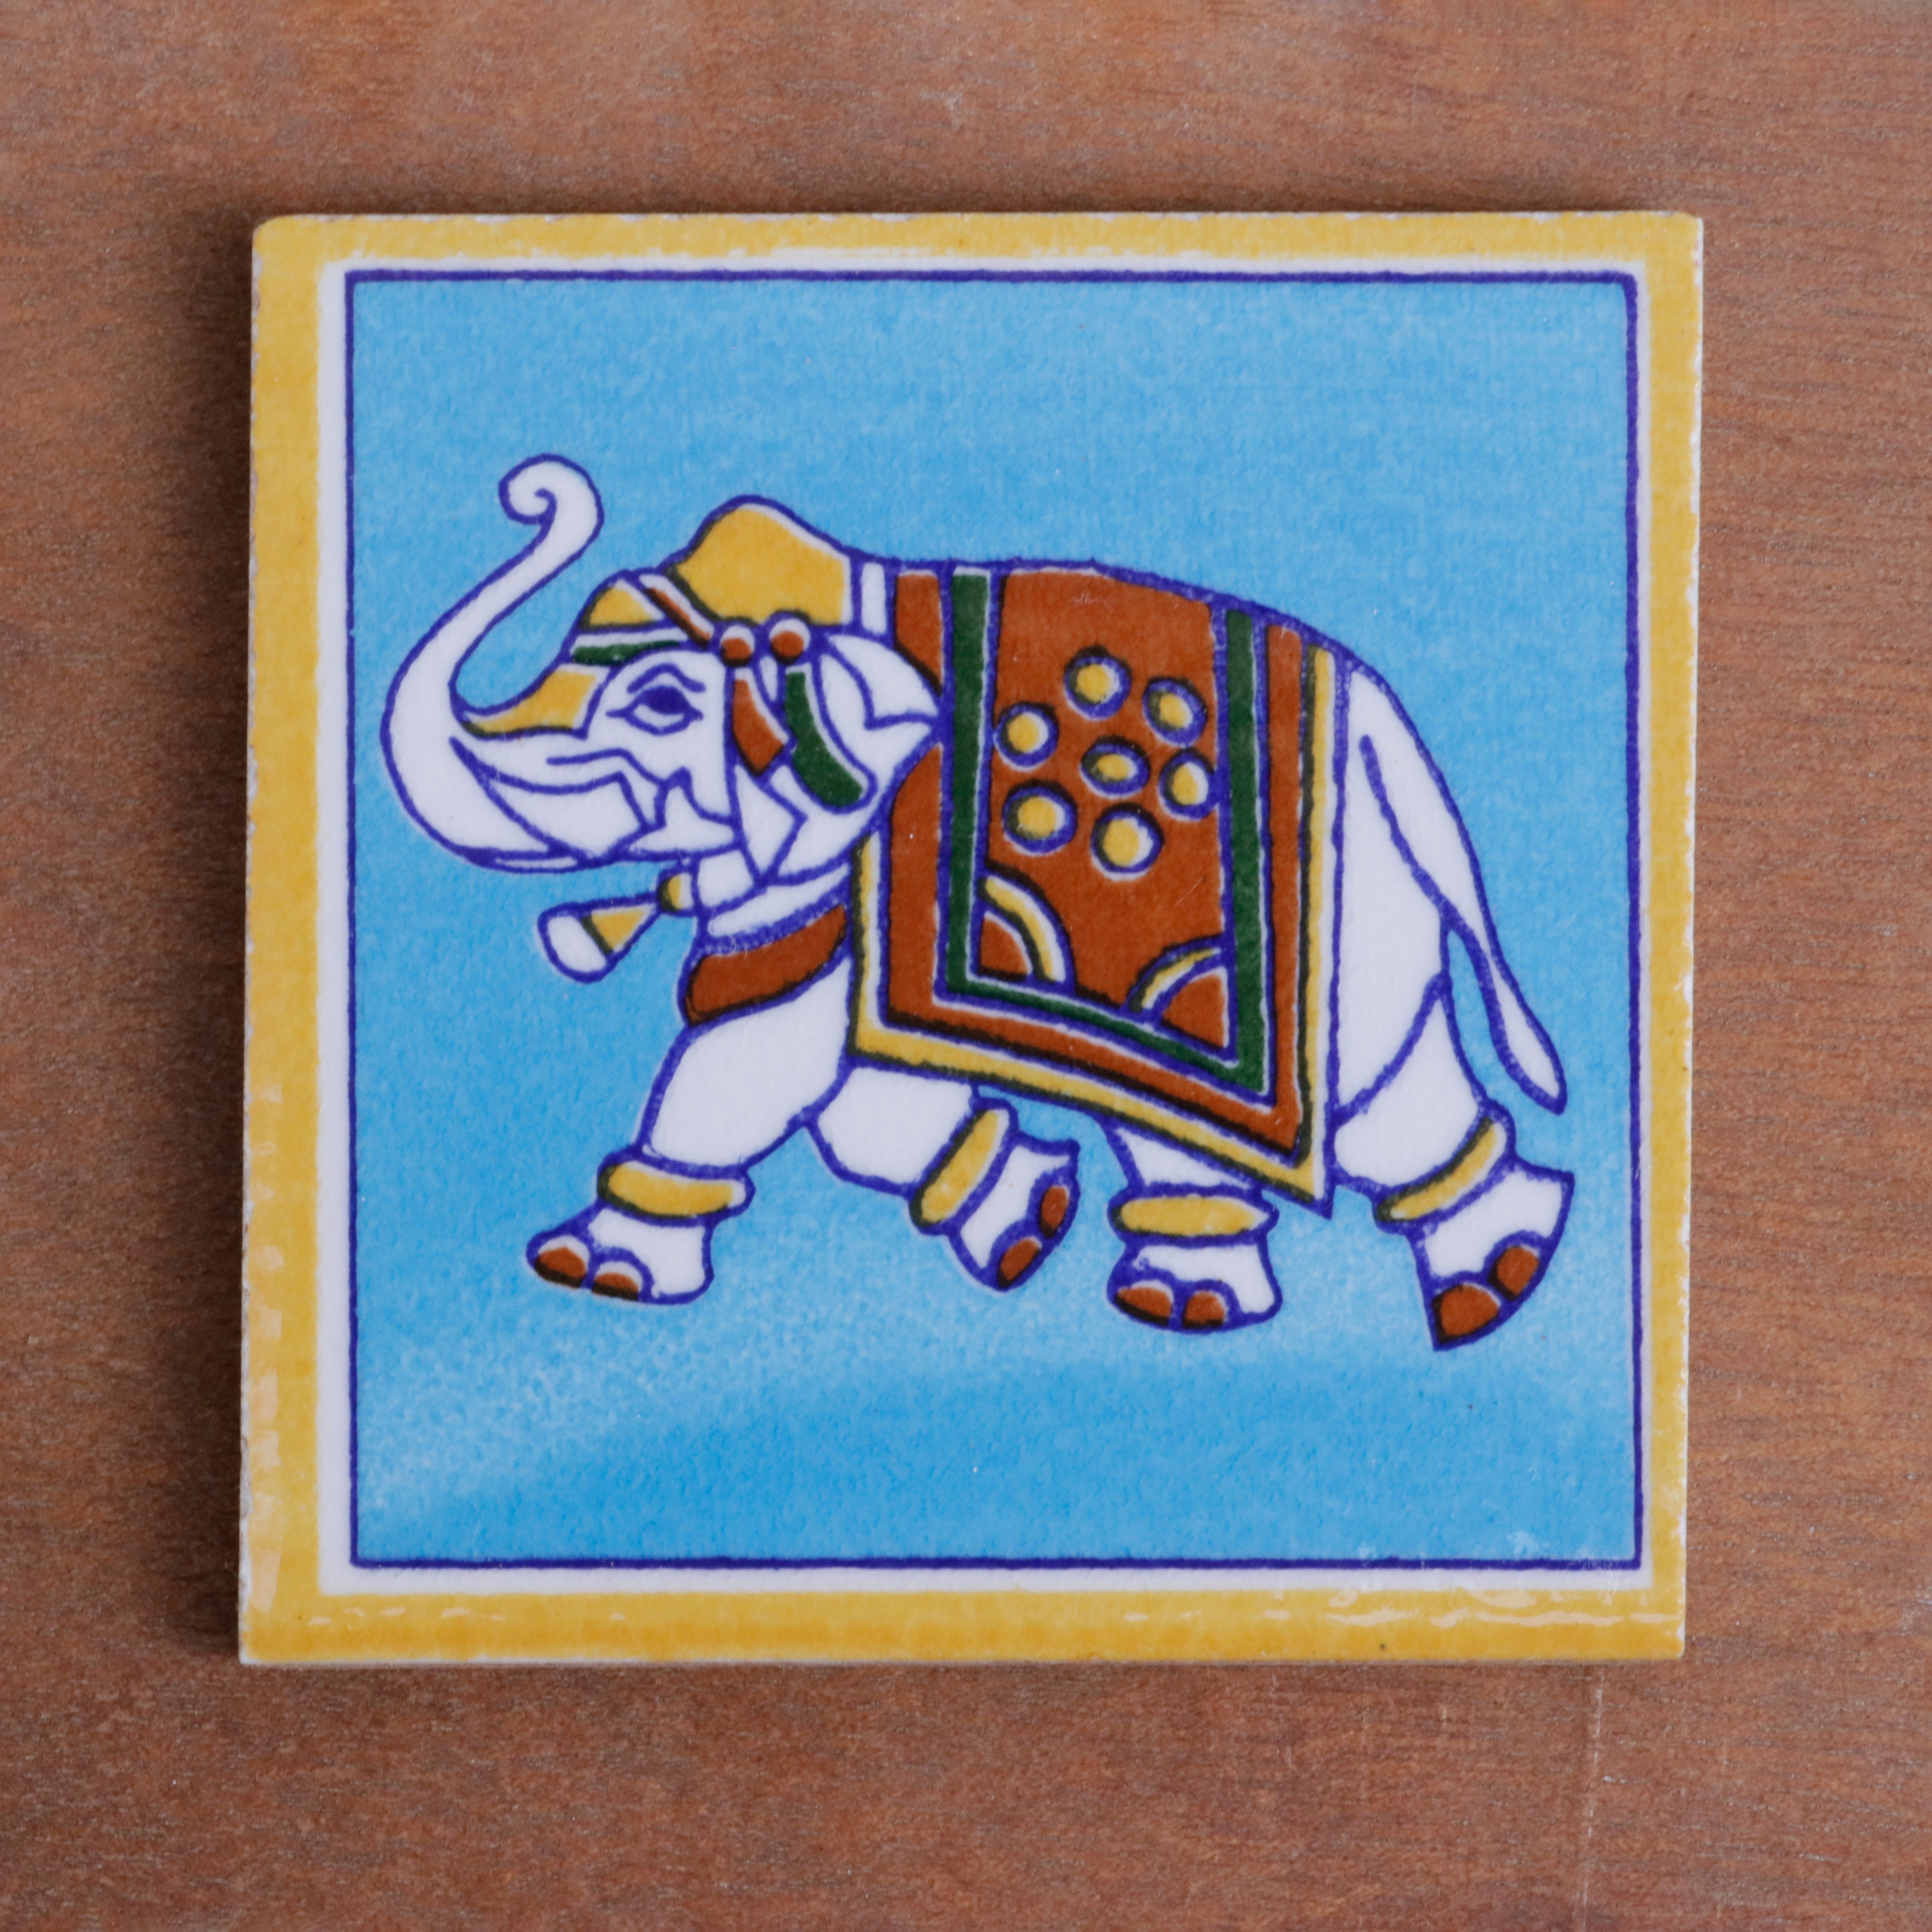 Irish Classic Finished Elephant Designed Ceramic Square Tile Set of 2 Ceramic Tile